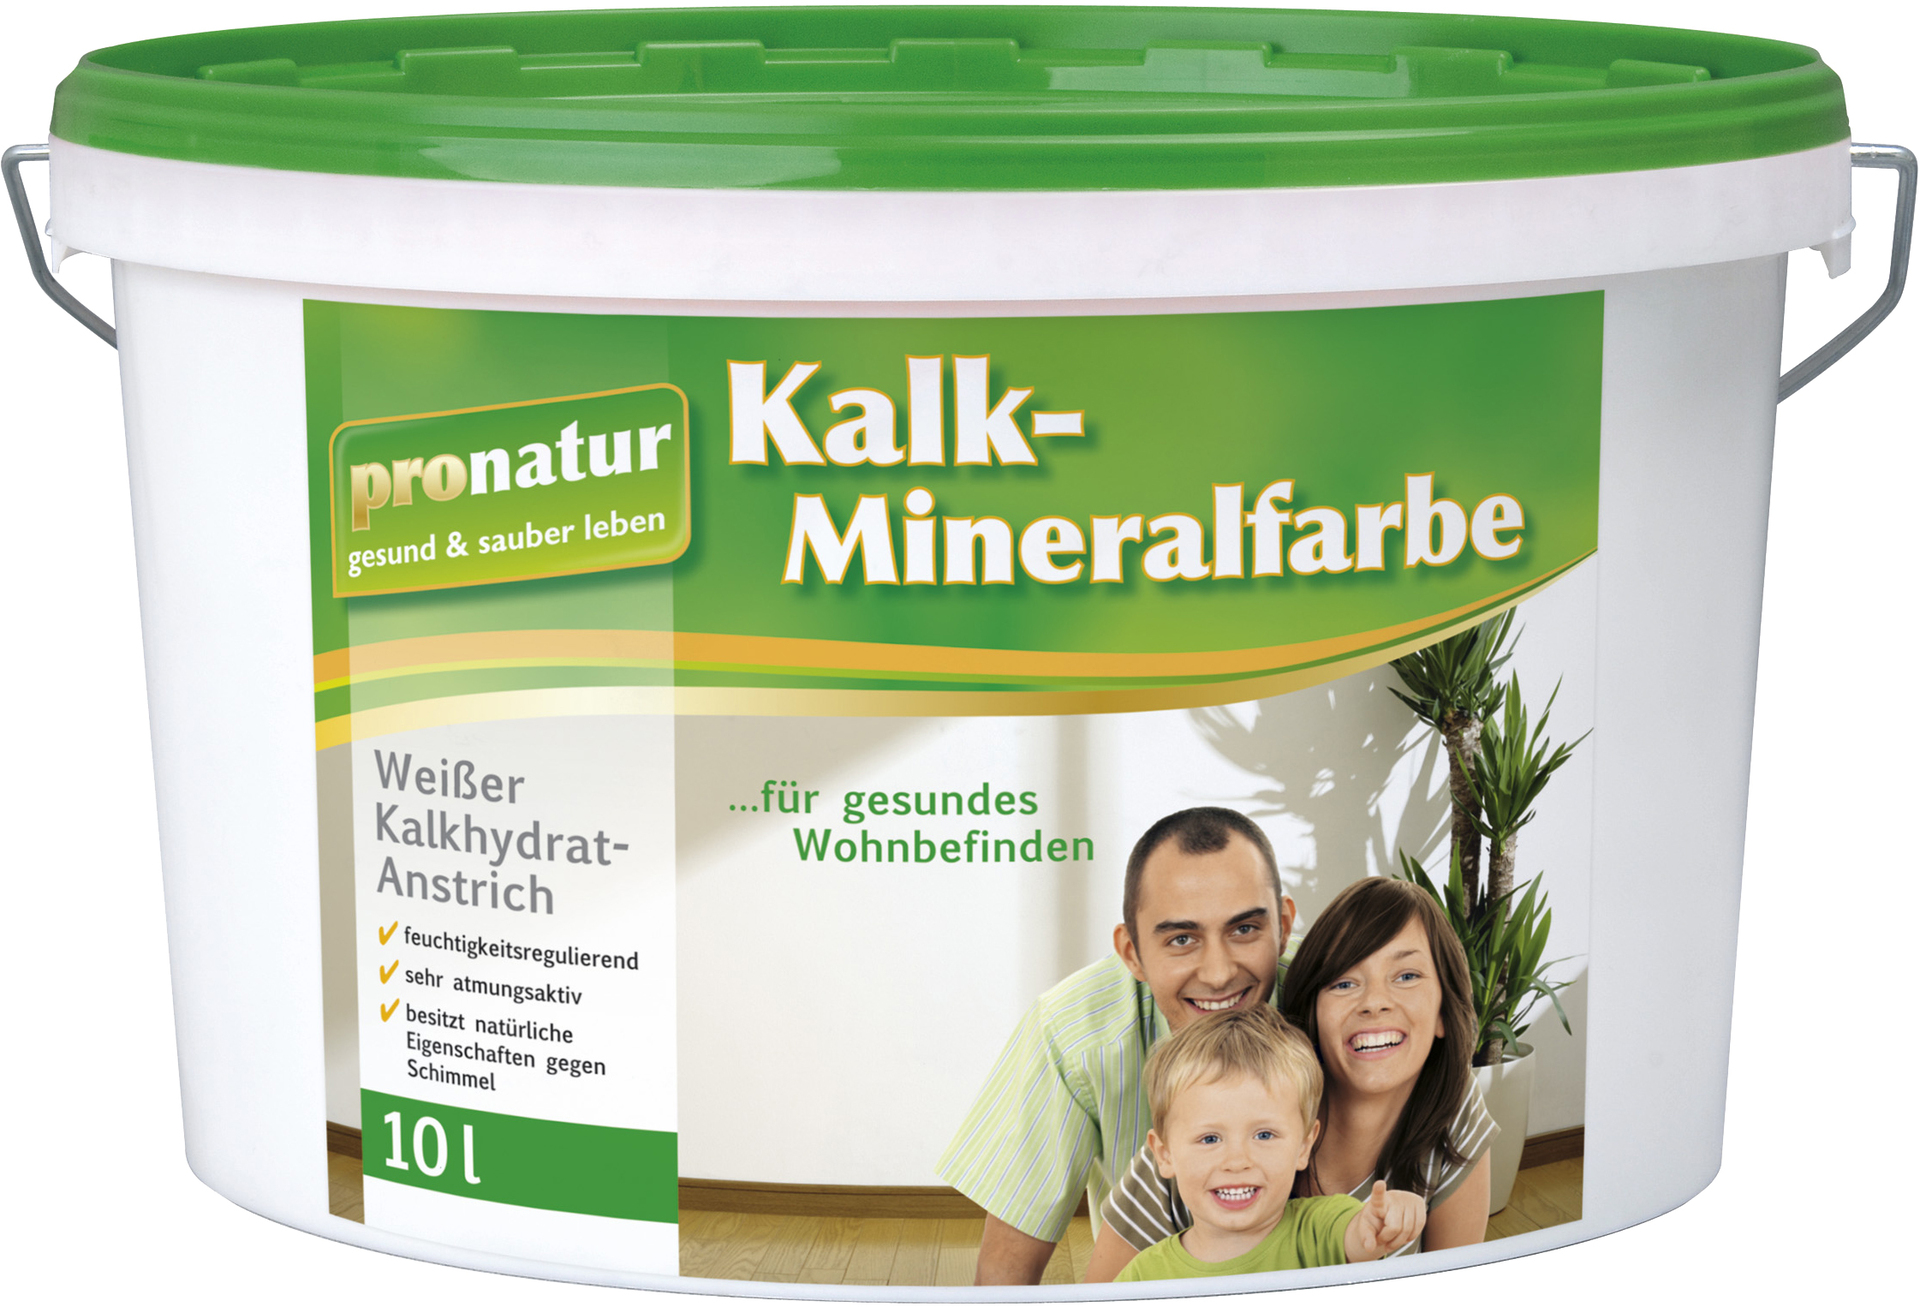 Kalk-Mineralfarbe pronatur